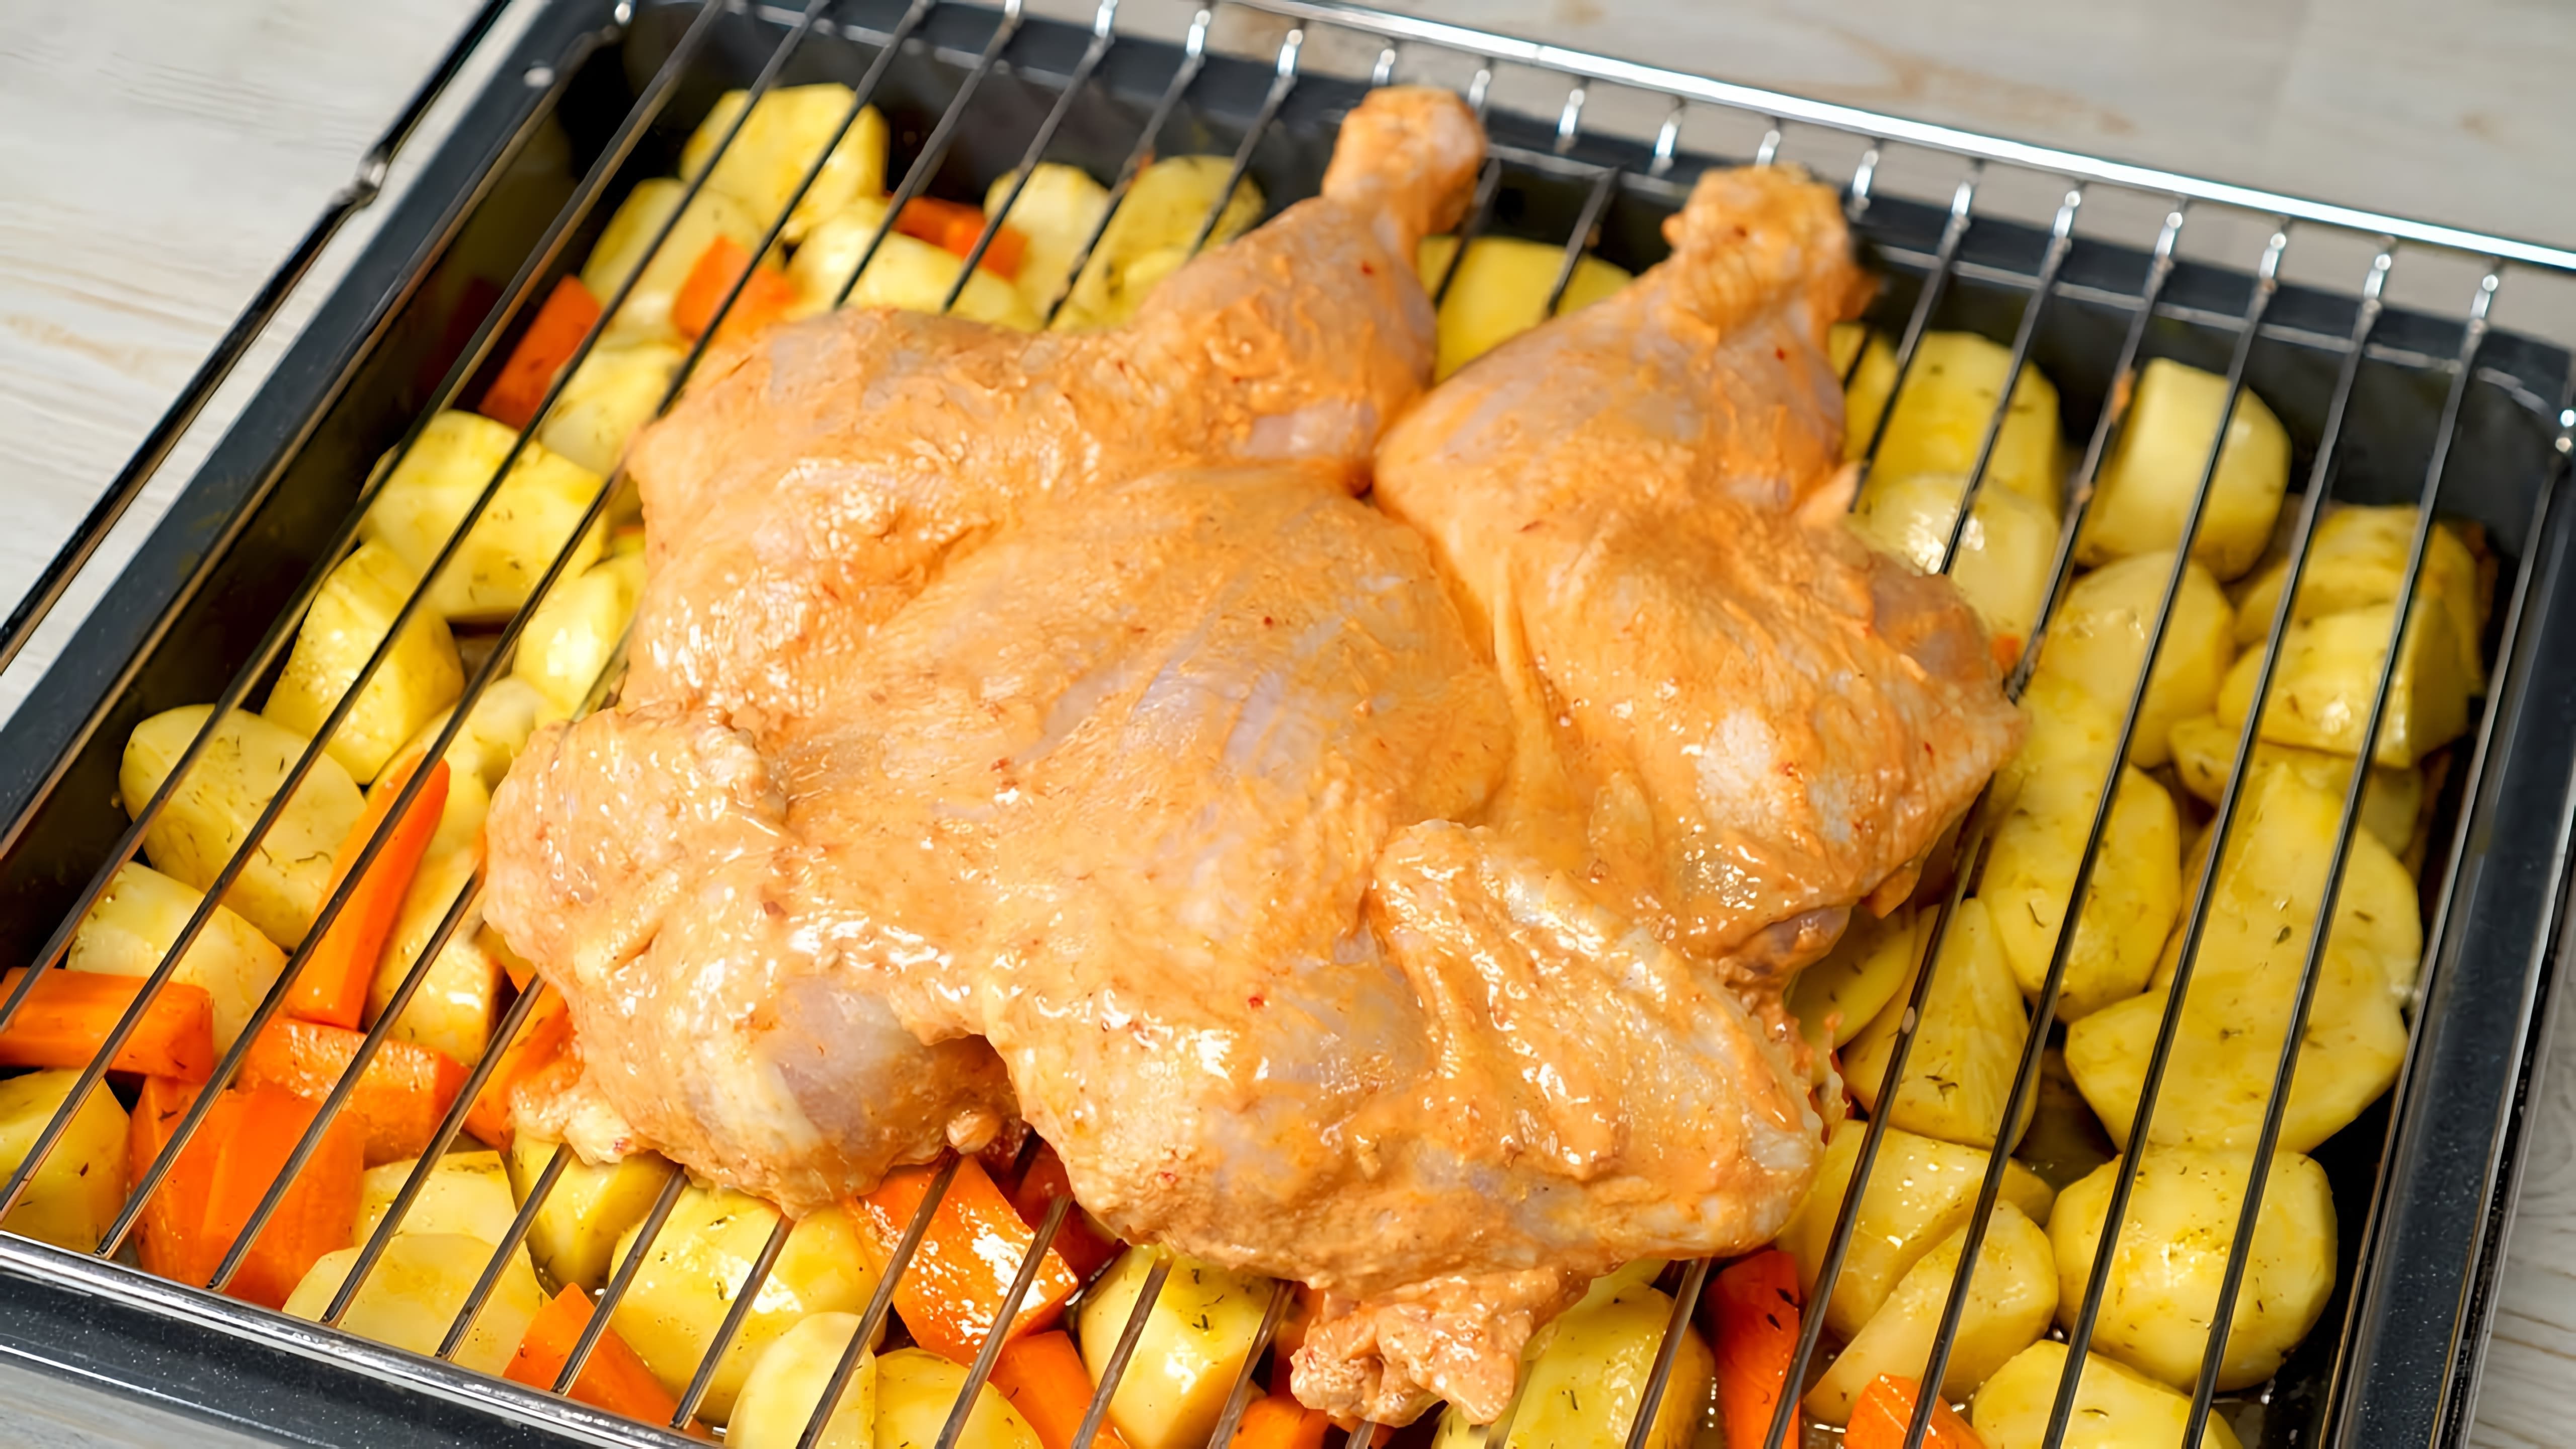 В этом видео демонстрируется рецепт приготовления курицы с картошкой в духовке